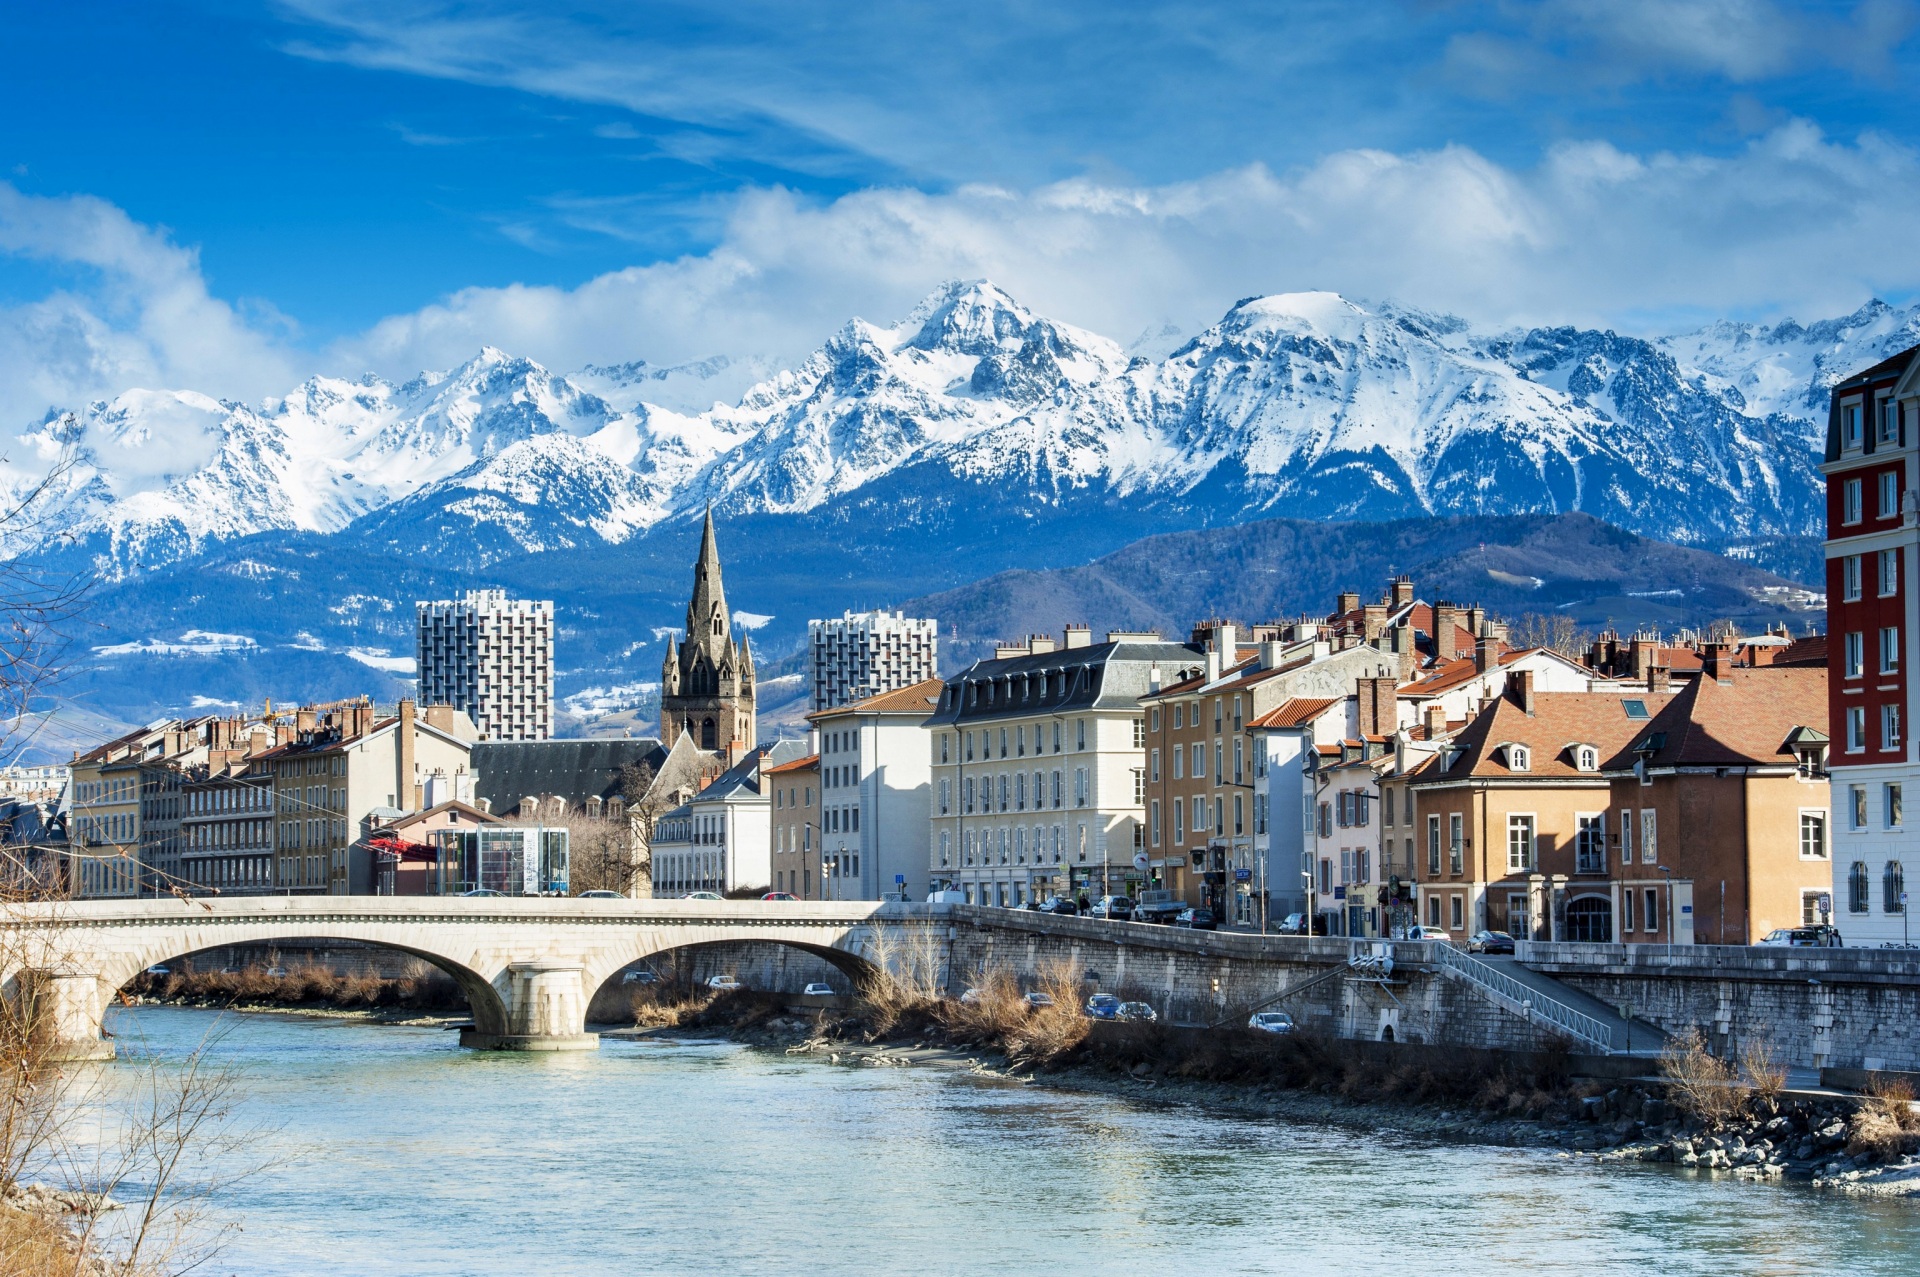 Grenoble city in France